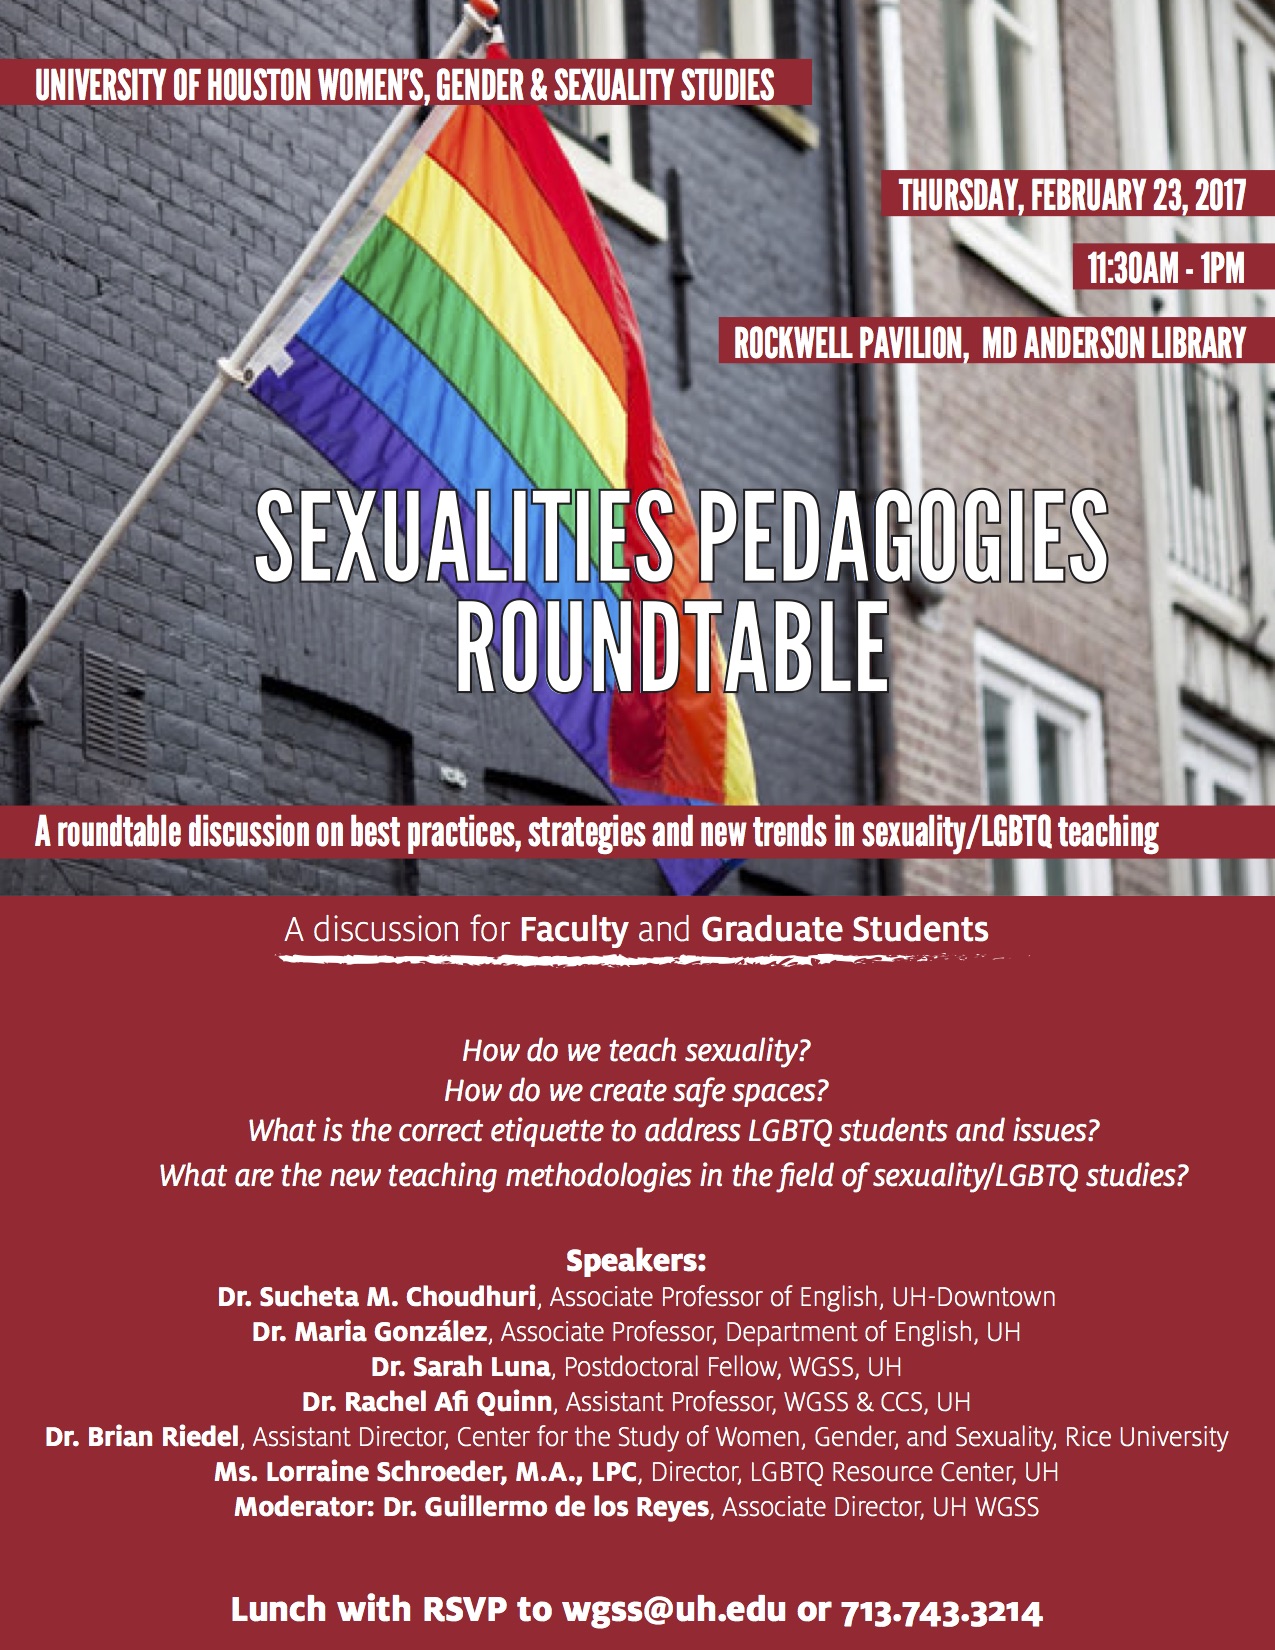 Sexualities Pedagogies Workshop